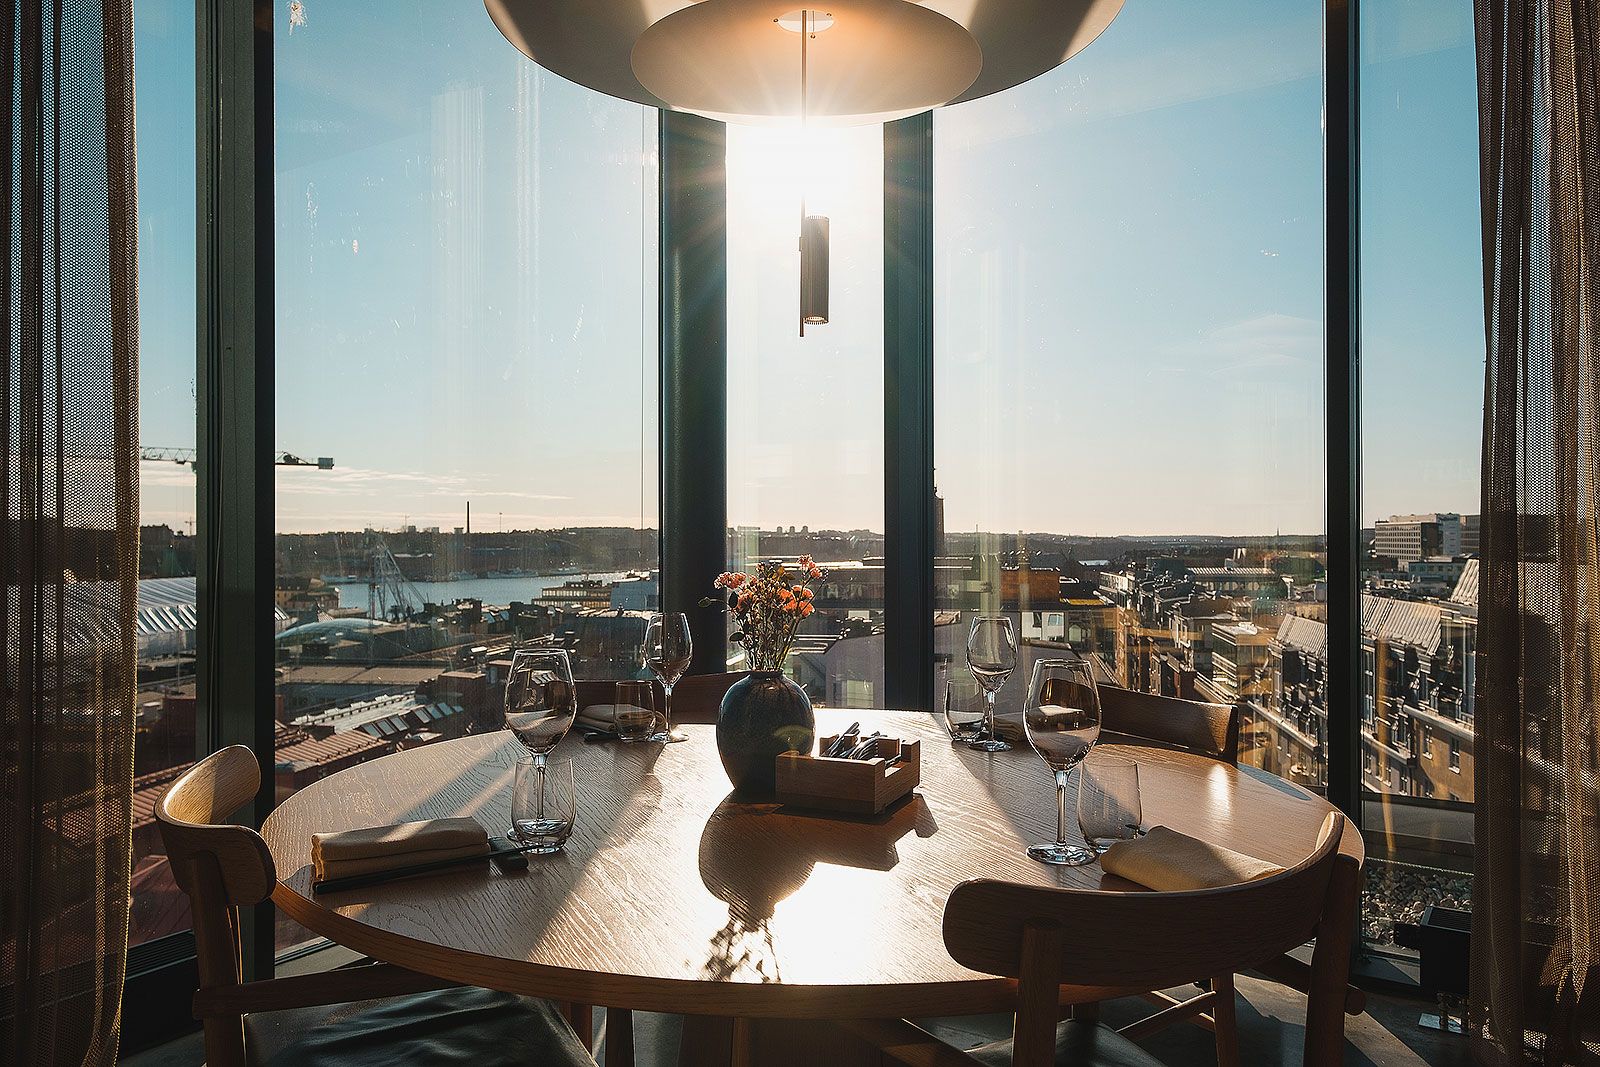 Restaurang Tak – Bästa restaurangerna i city och Norrmalm